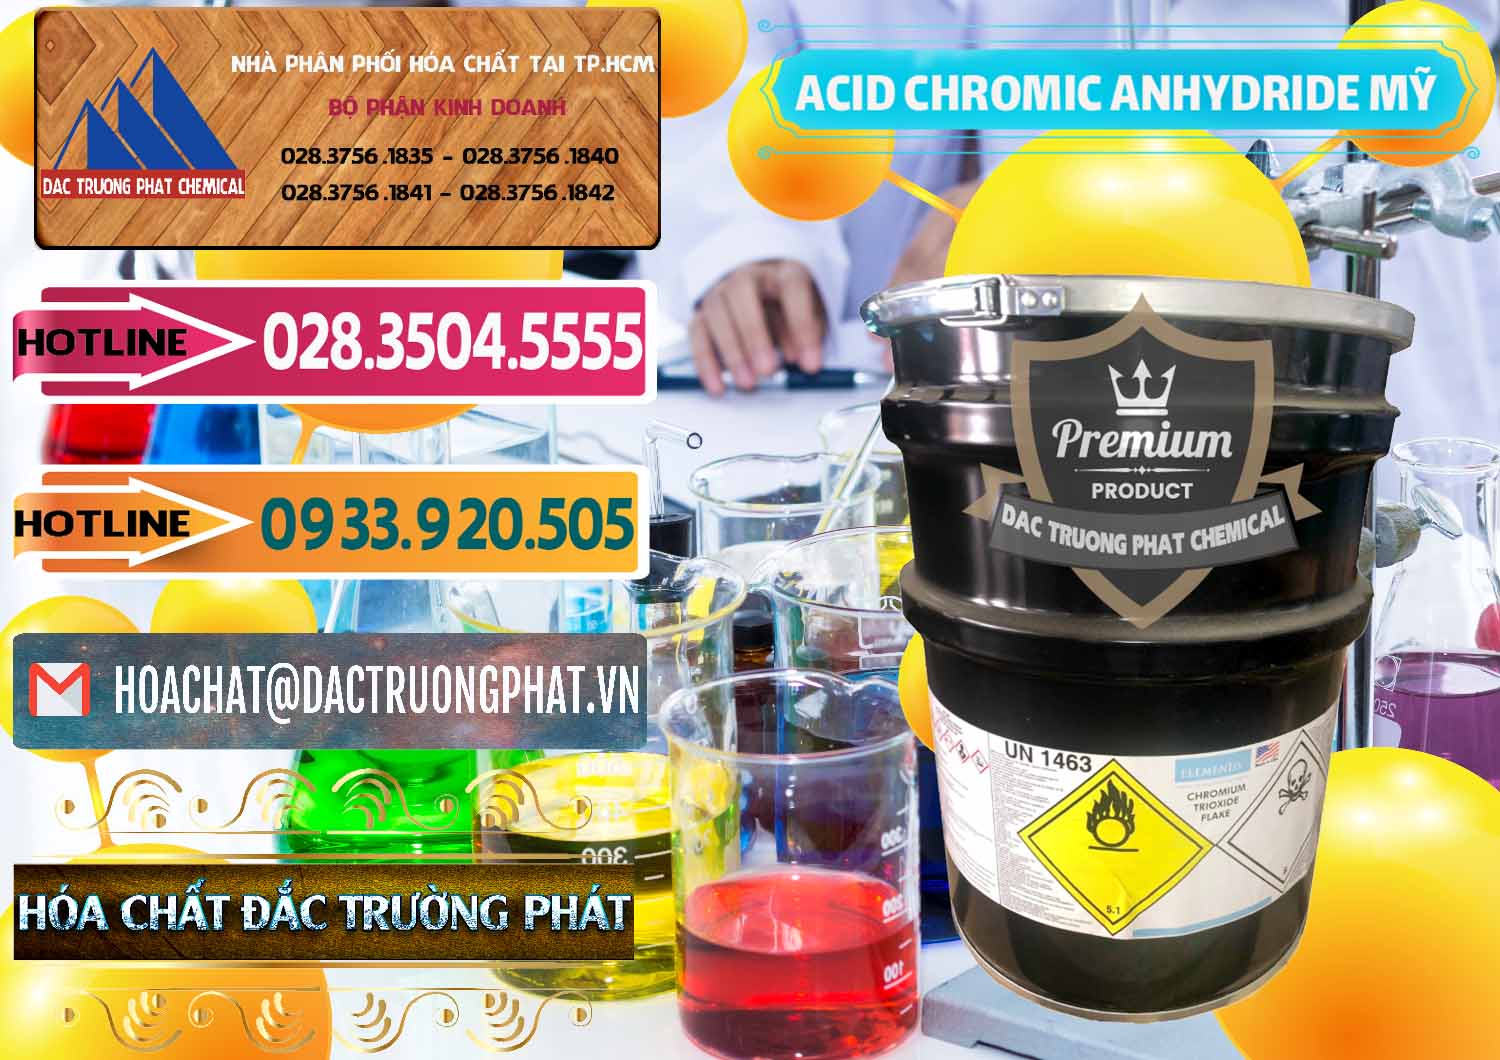 Nhập khẩu - bán Acid Chromic Anhydride - Cromic CRO3 USA Mỹ - 0364 - Công ty cung cấp & phân phối hóa chất tại TP.HCM - dactruongphat.vn